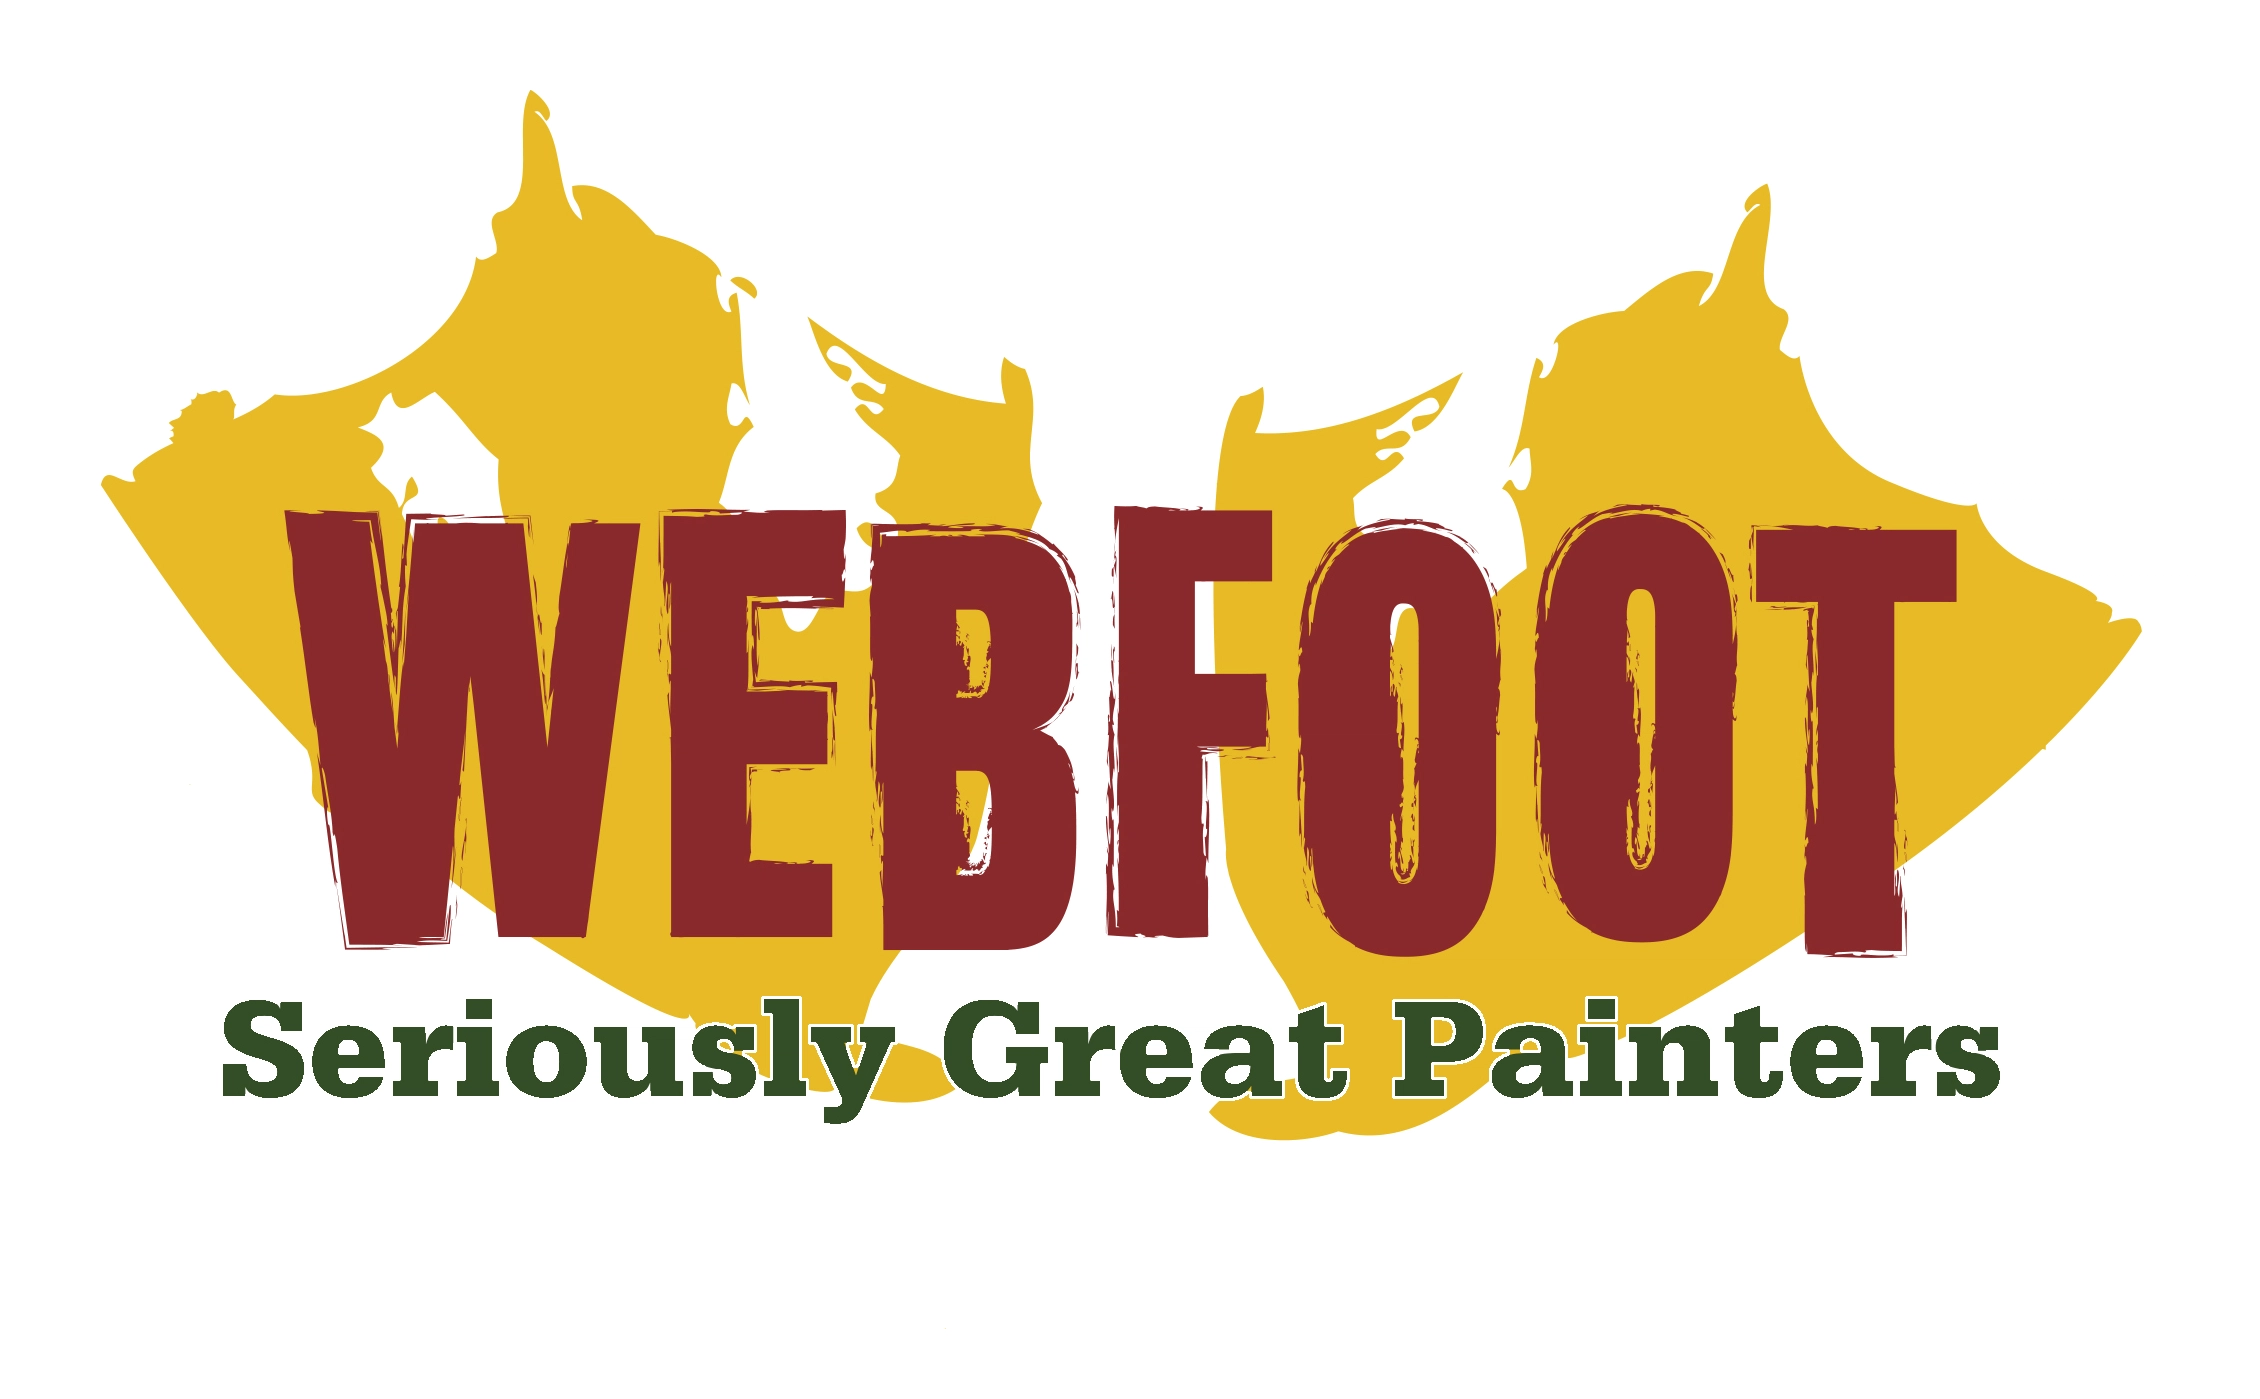 Webfoot Home Improvements Logo